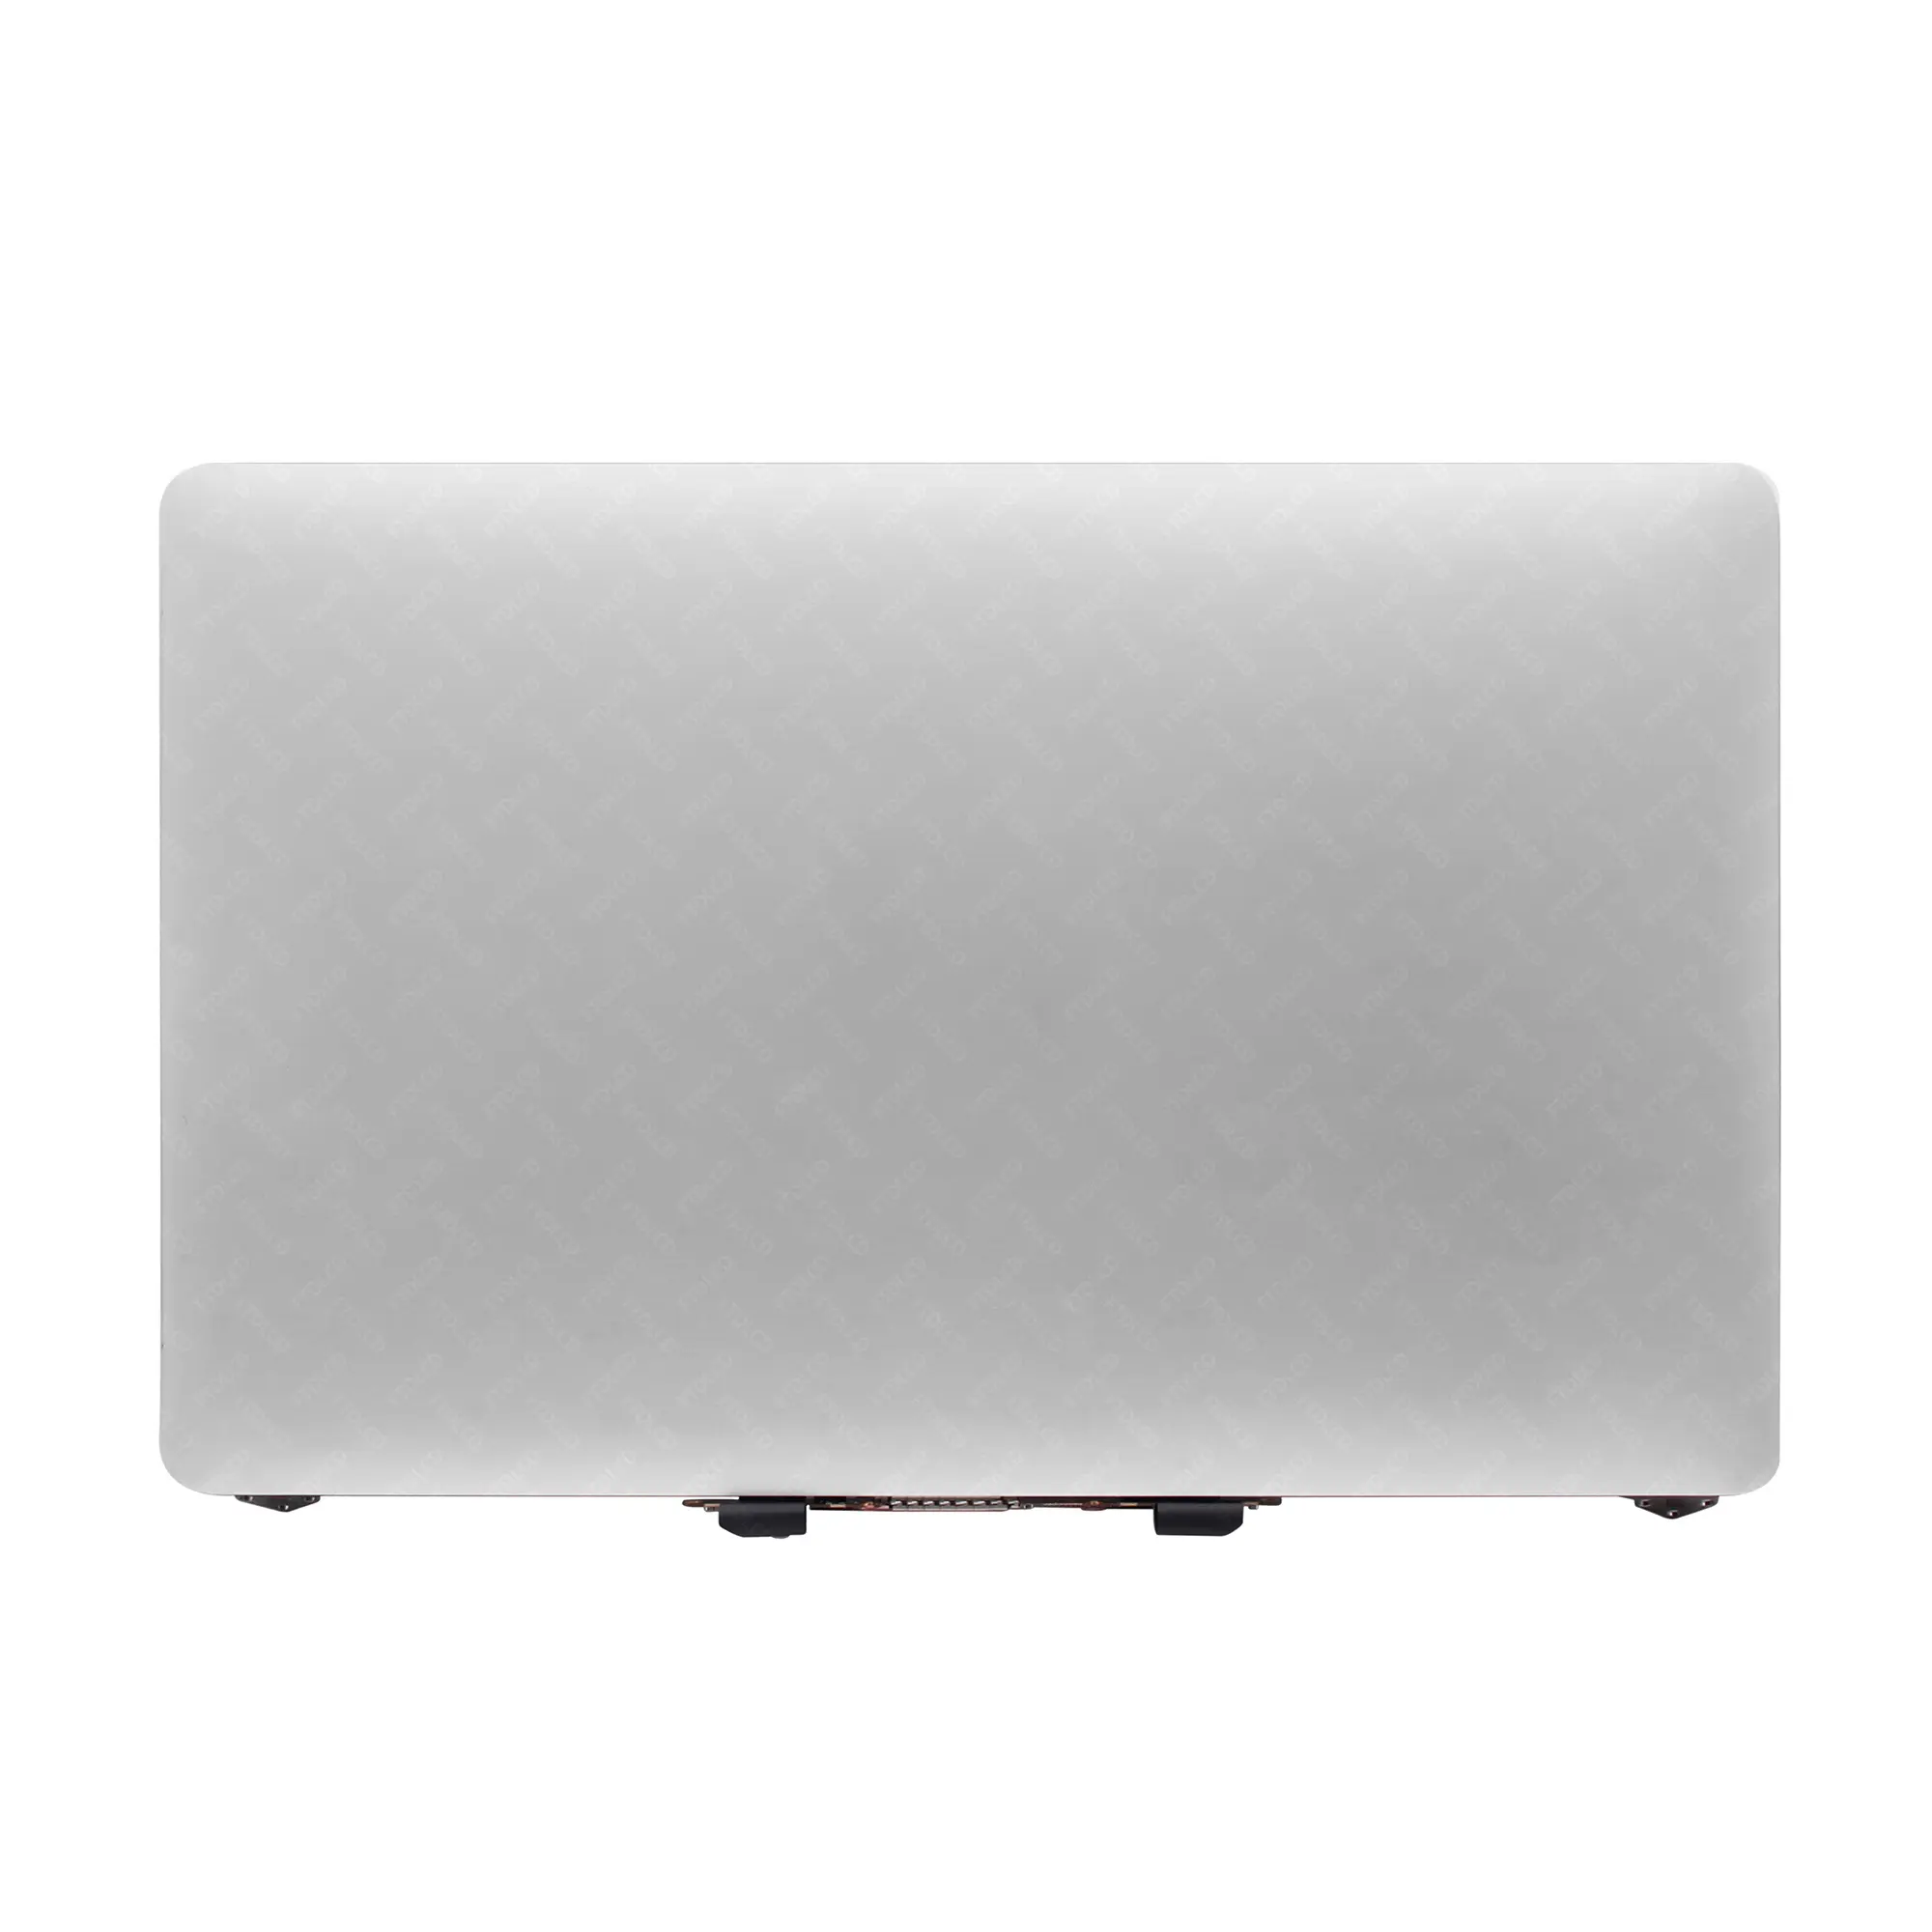 100% Getest Gevulde Nieuwe Laptop Lcd-scherm Panel Lcd Voor Macbook Pro A1989 2019 Mid 2018 Jaar Emc 3214 Emc 33 Lcd-scherm Montage